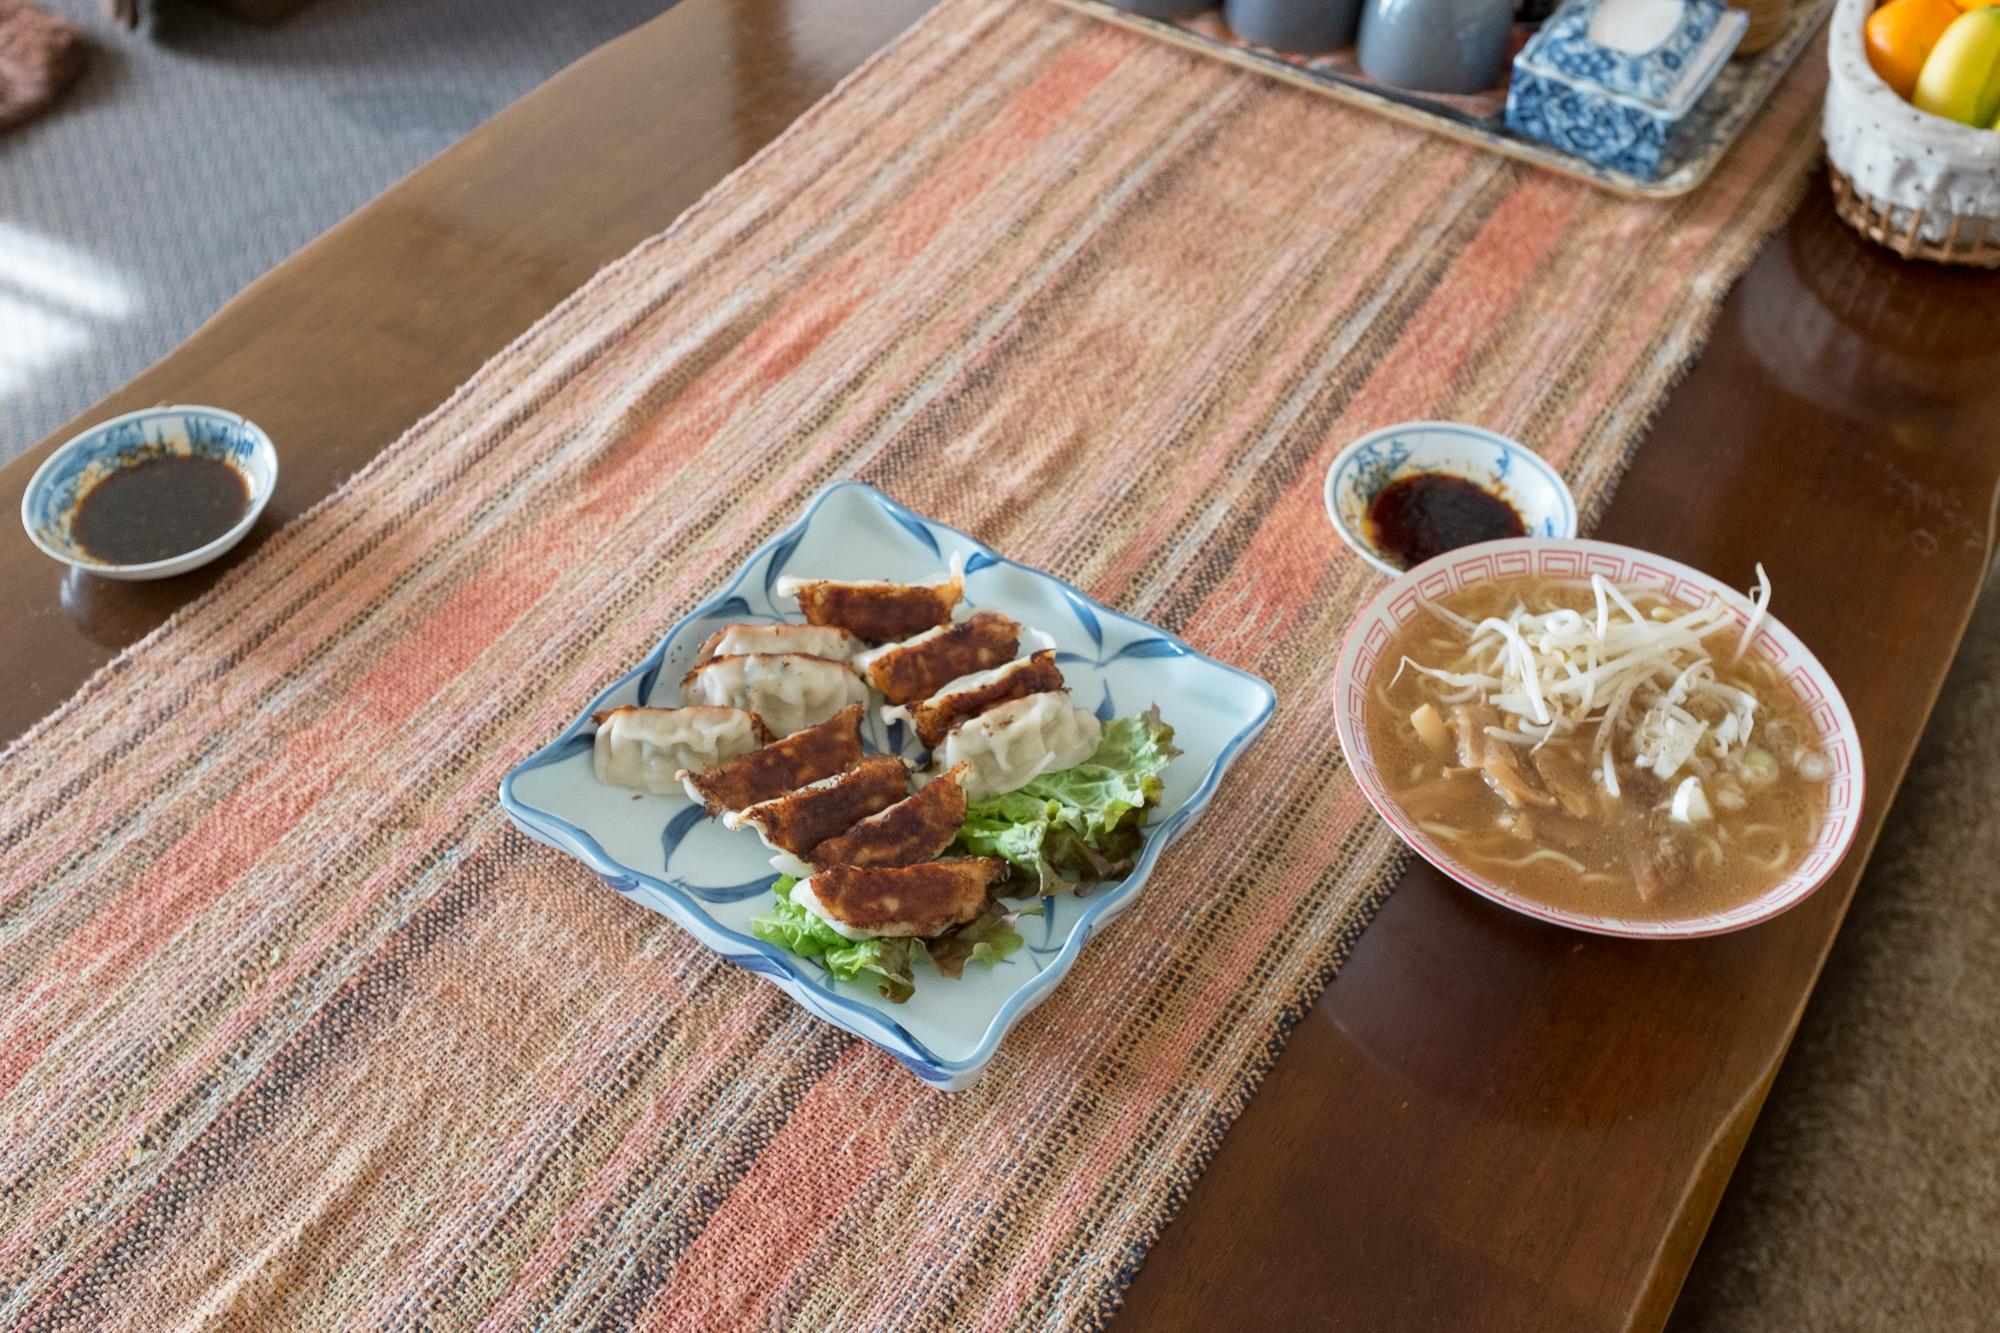 โฮมสเตย์ และ เรียนภาษาญี่ปุ่น อาหารที่โฮสต์ทำ